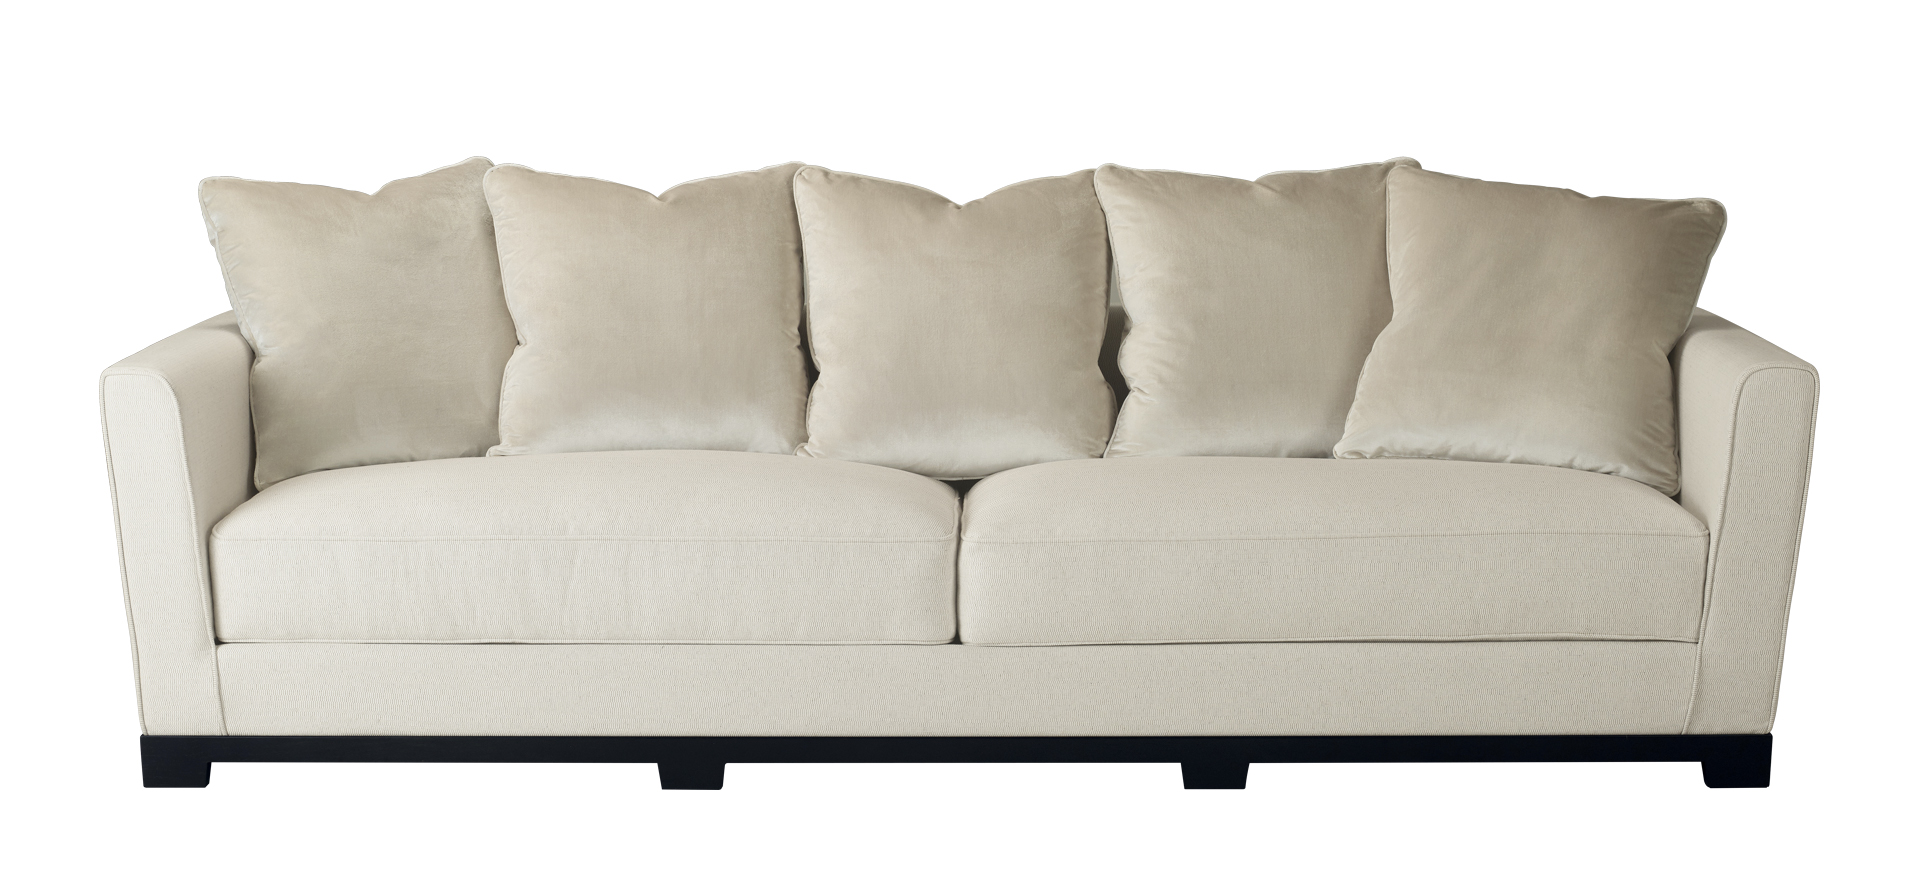 „Wanda“ ist ein klassisches Sofa aus Holz mit Stoffbezug, aus dem Katalog von Promemoria | Promemoria